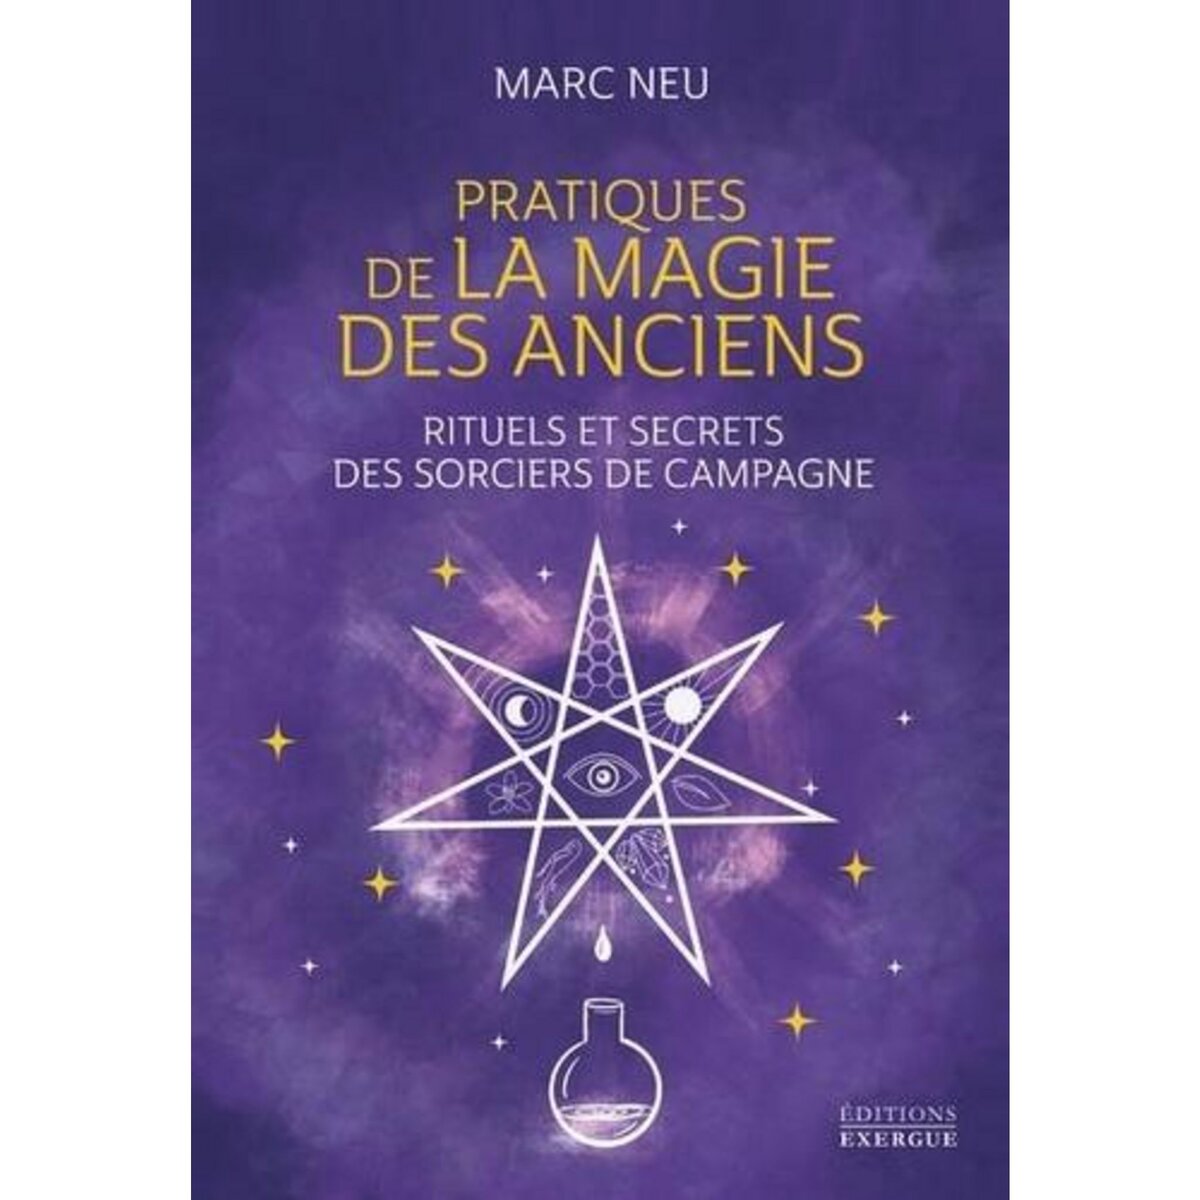  PRATIQUES DE LA MAGIE DES ANCIENS. RITUELS ET SECRETS DES SORCIERS DE CAMPAGNE, Neu Marc